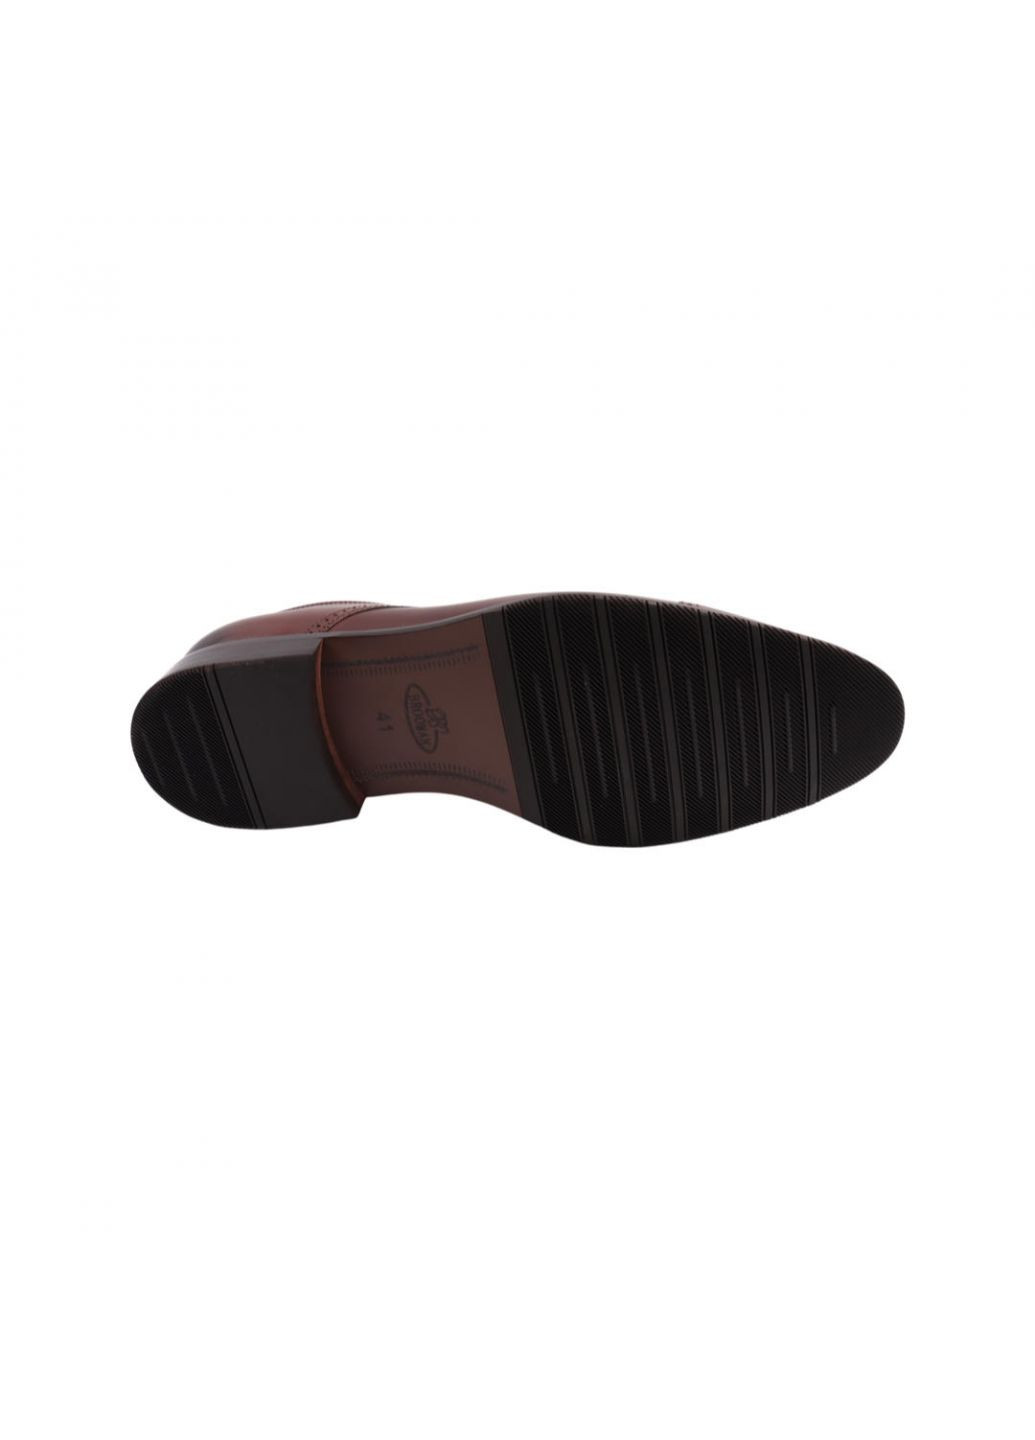 Коричневые туфли мужские коричневые натуральная кожа Brooman